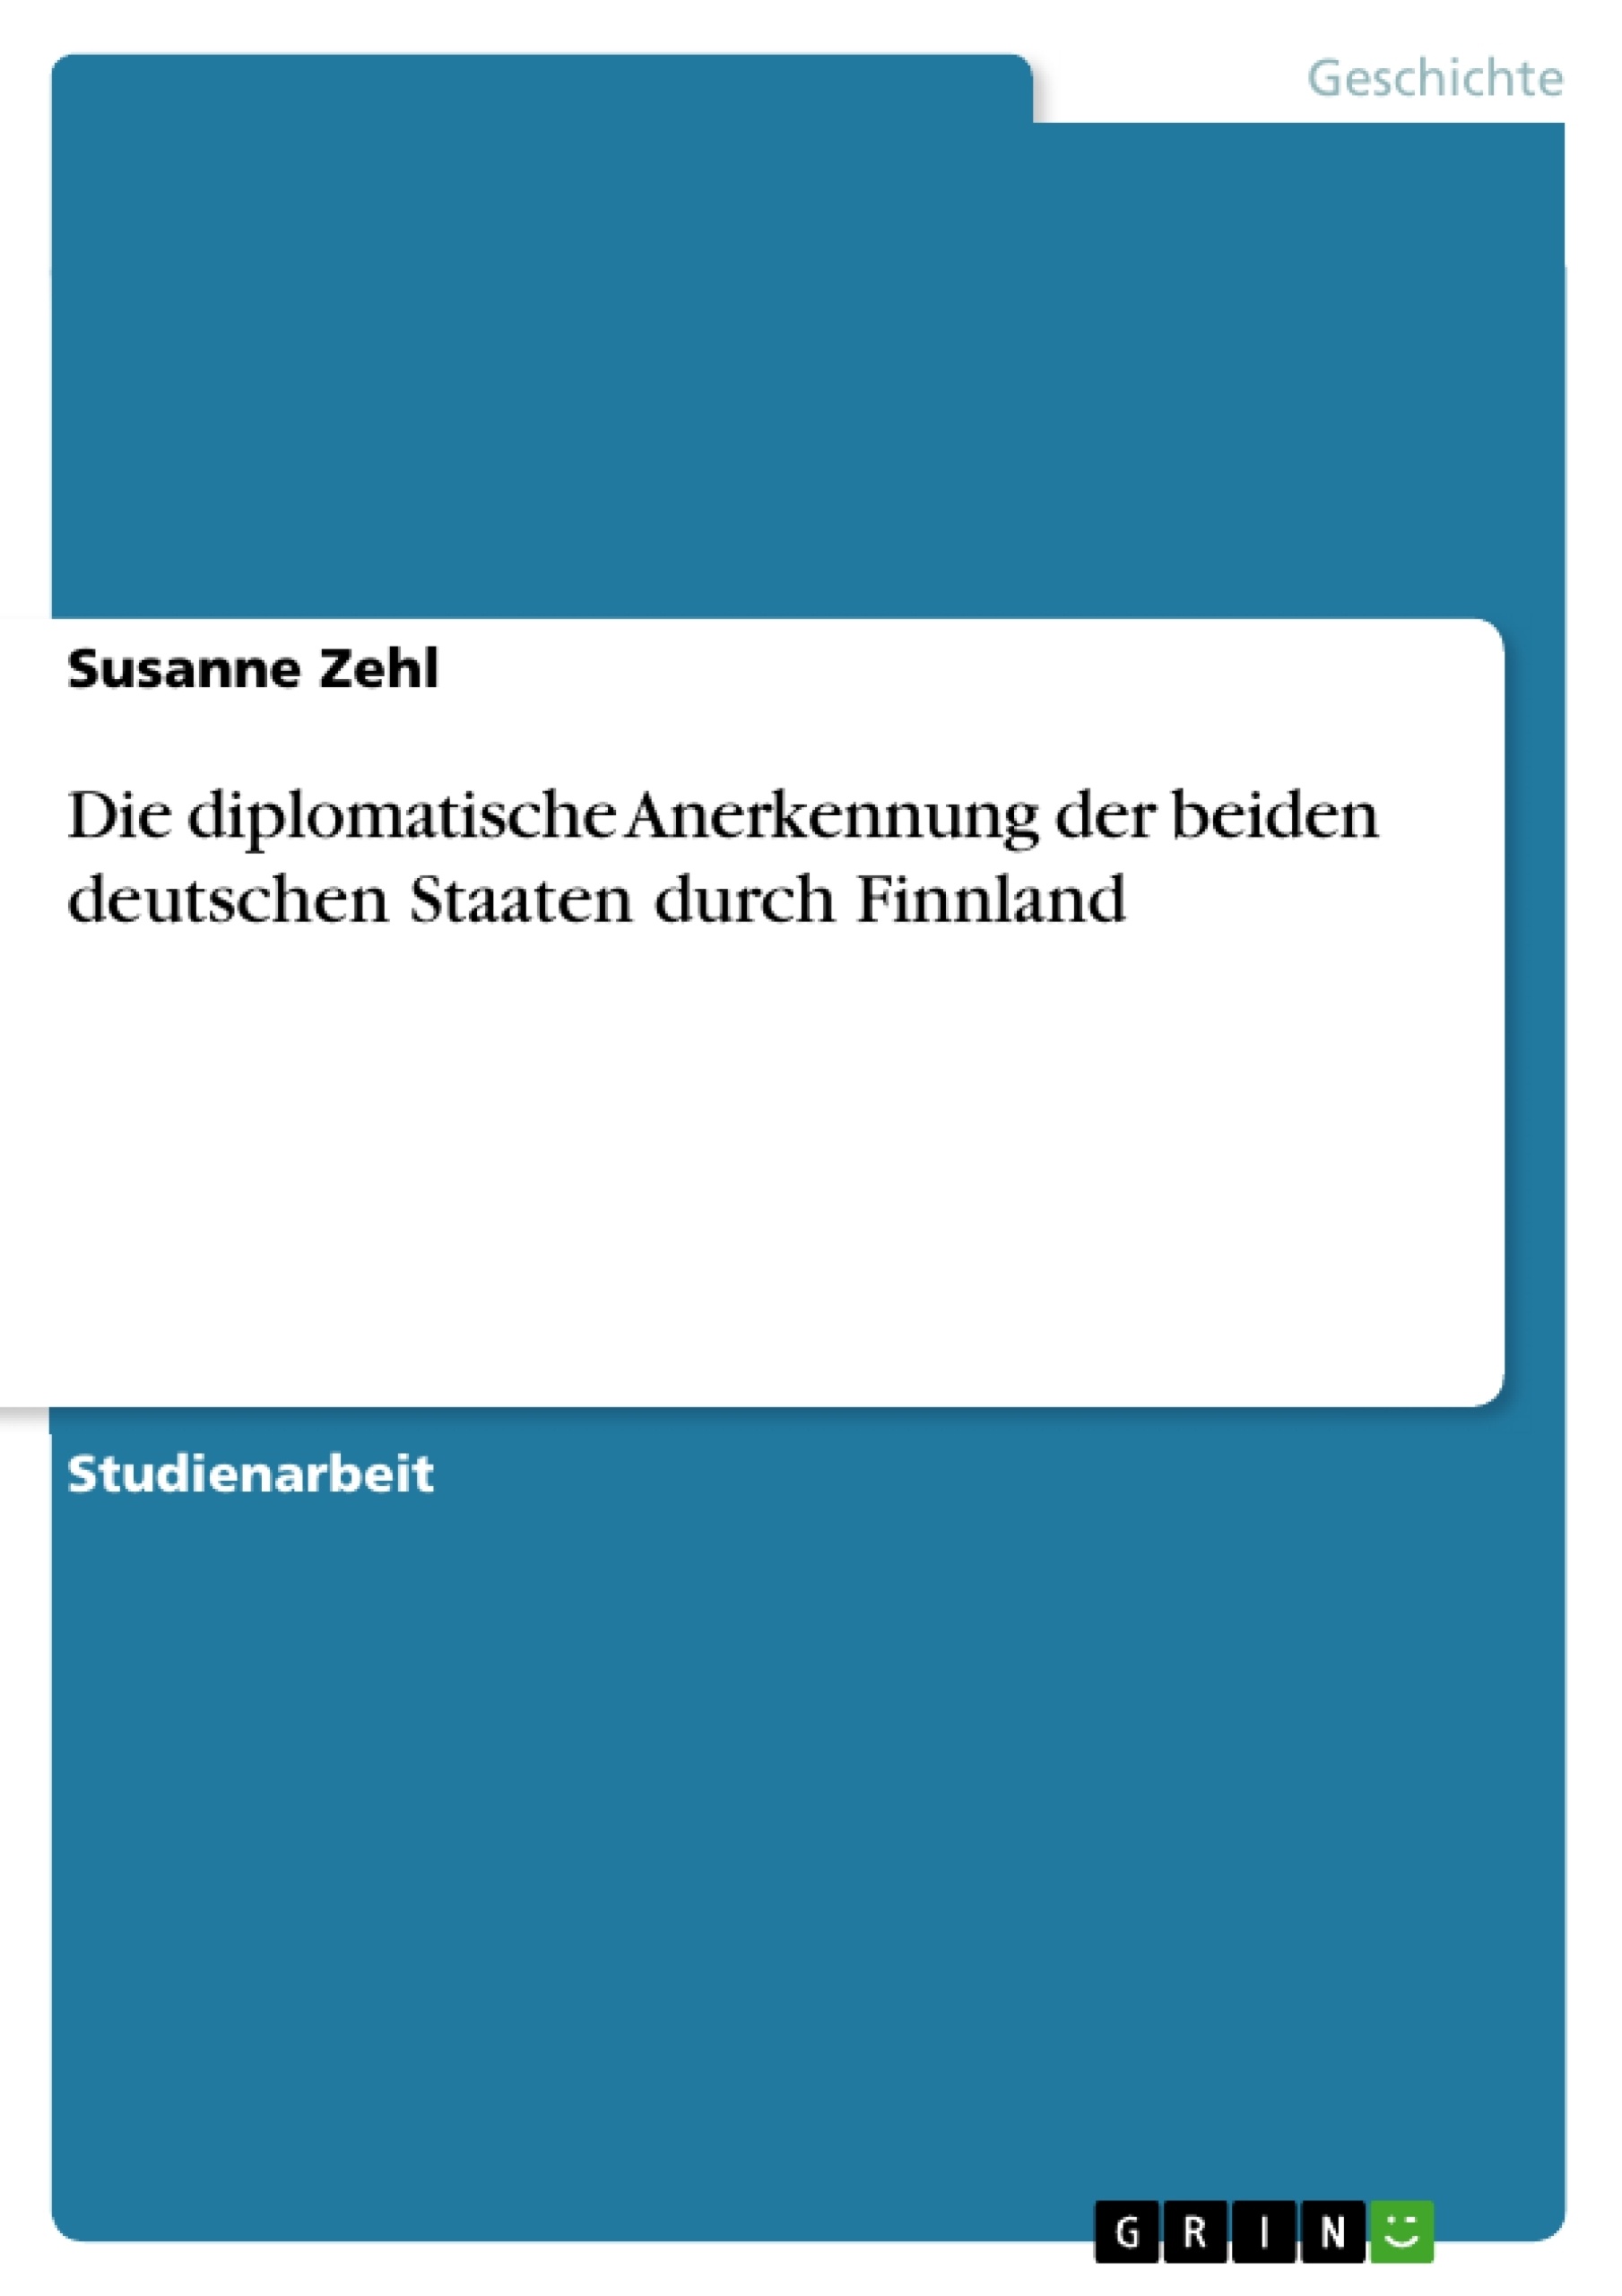 Título: Die diplomatische Anerkennung der beiden deutschen Staaten durch Finnland